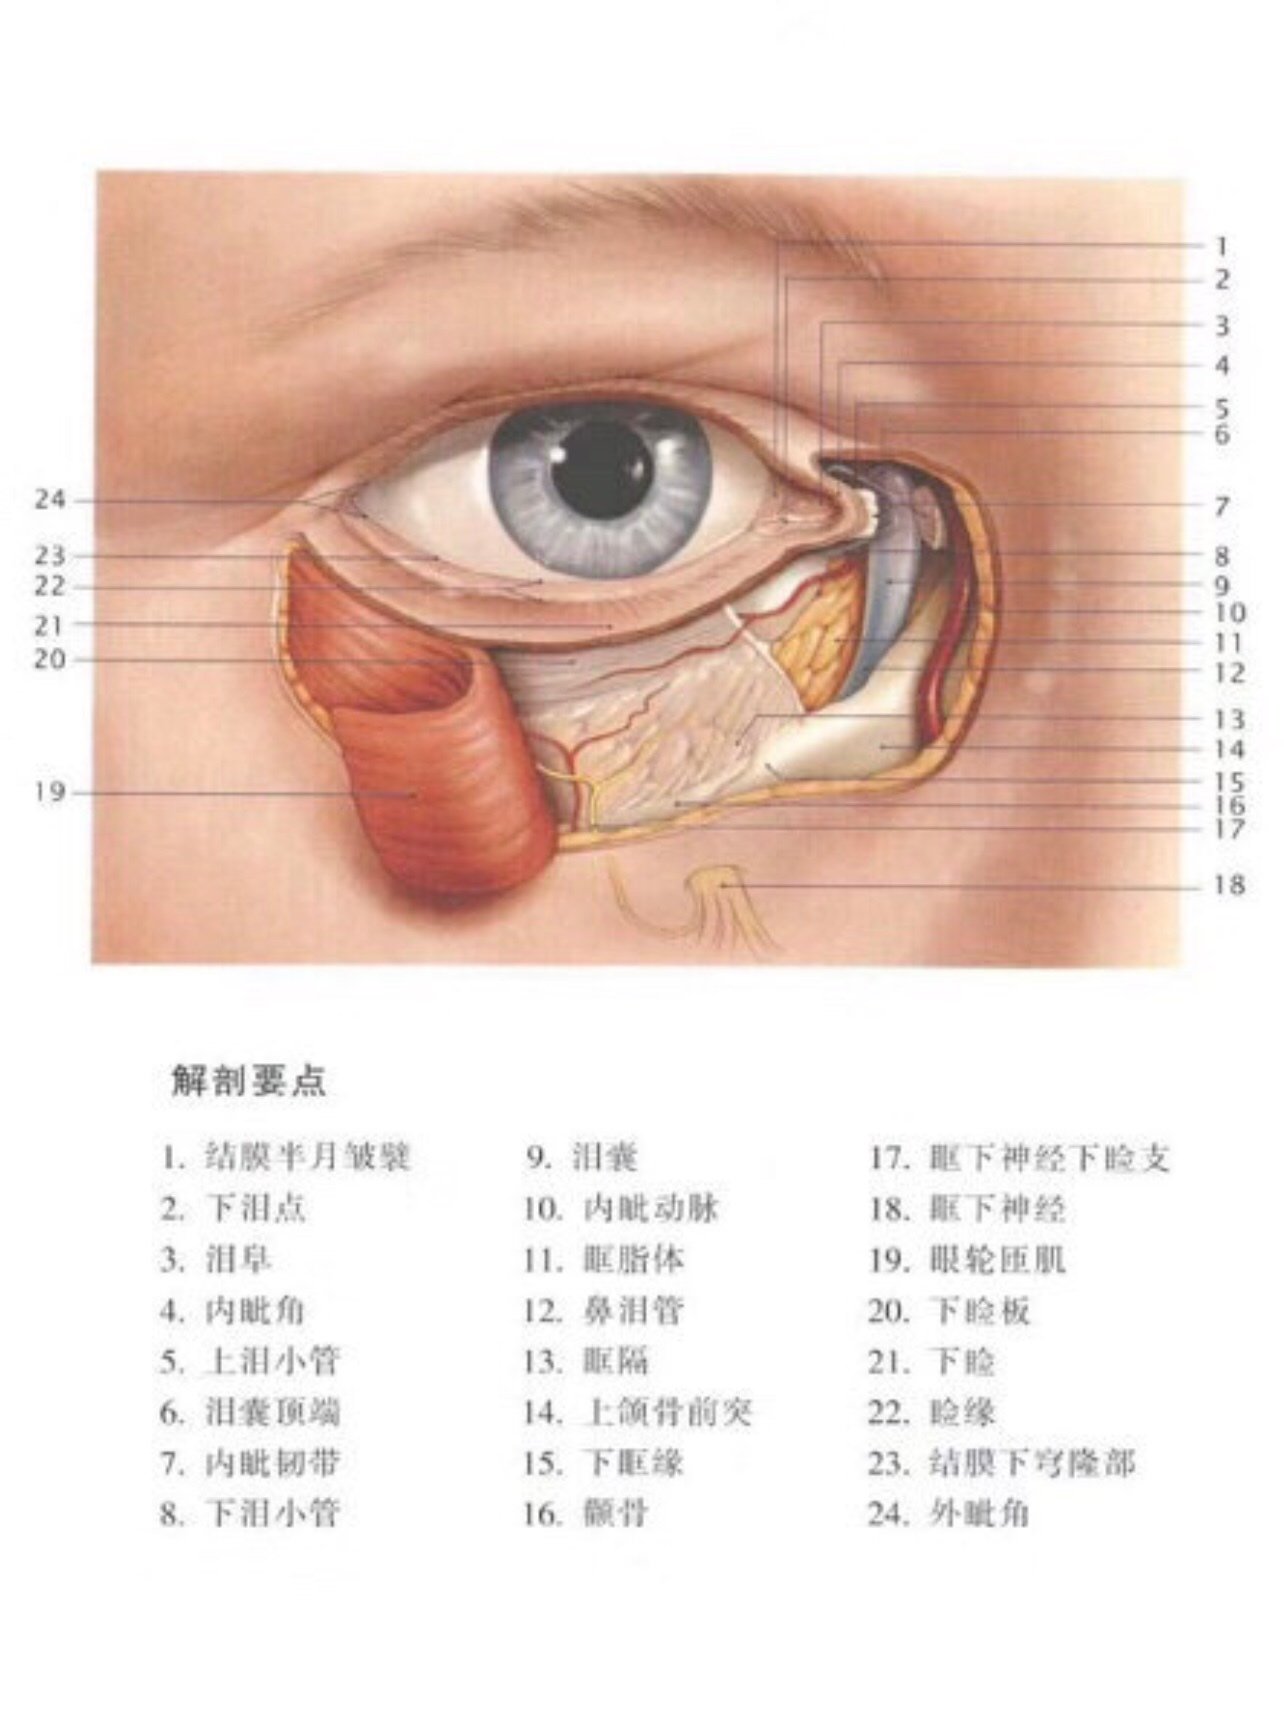 【眼部肌肉受损会导致眼睛无法闭合】其他部位的眼轮